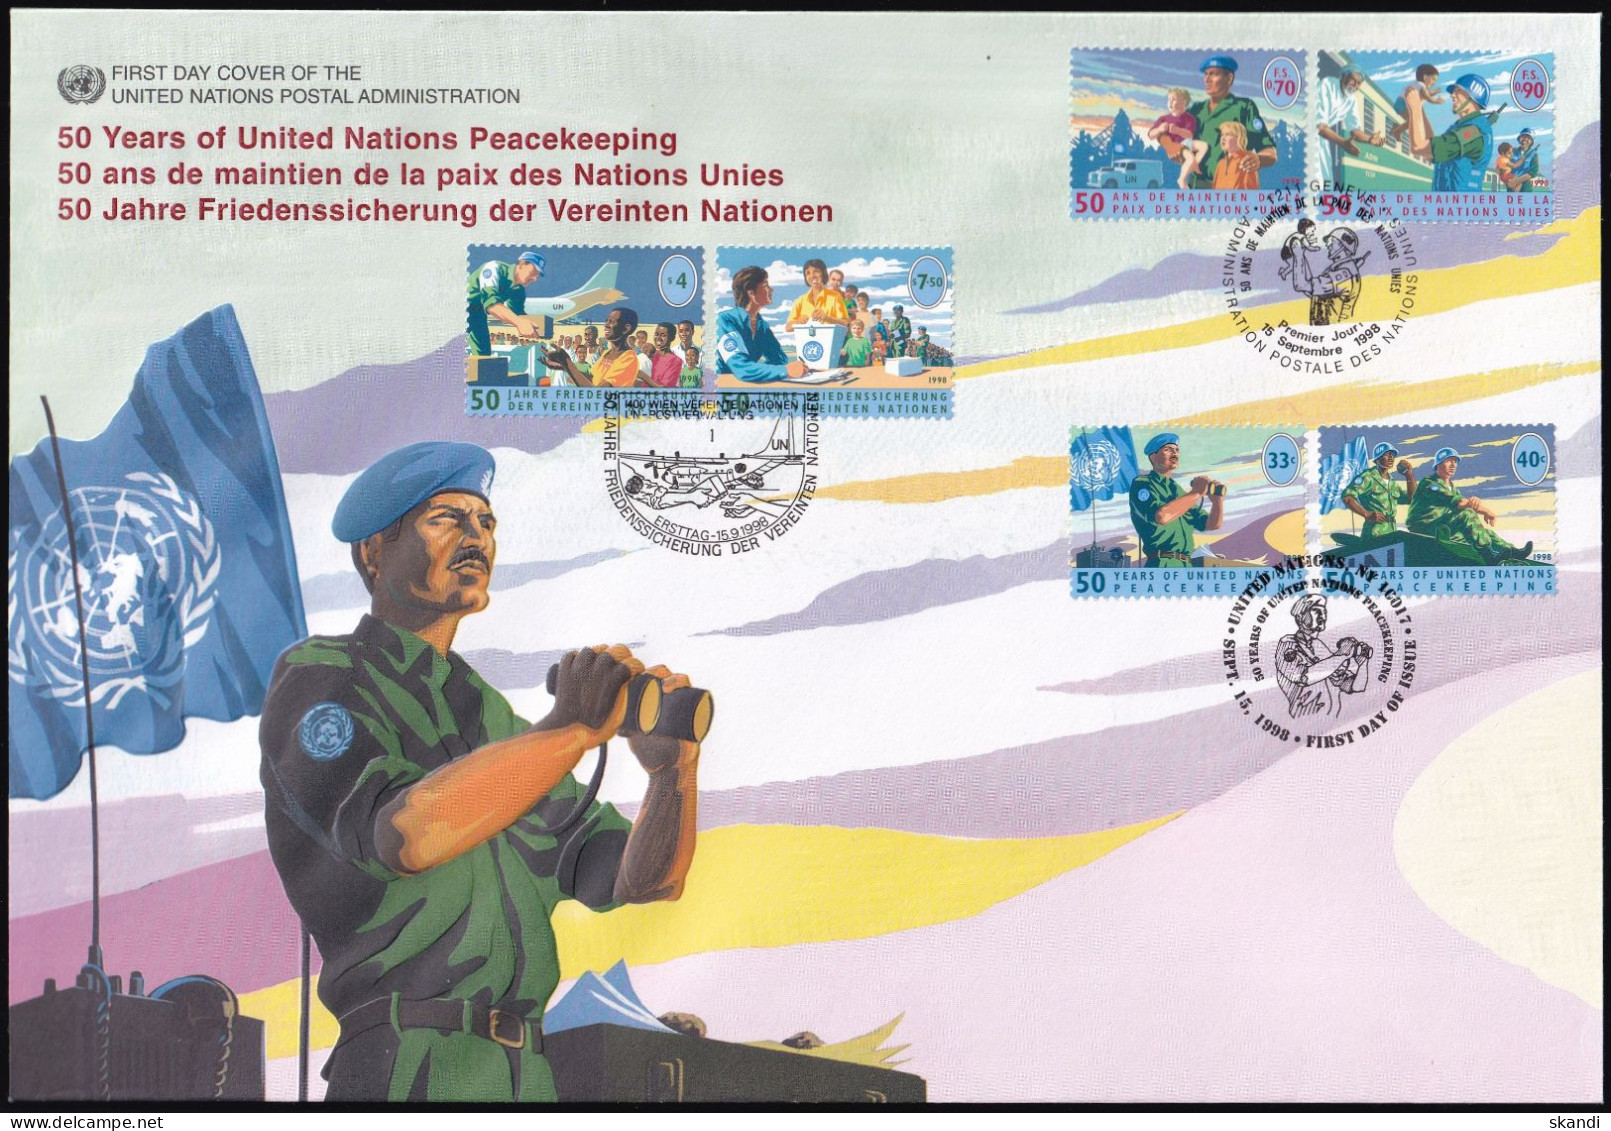 UNO NEW YORK - WIEN - GENF 1998 TRIO-FDC 50 Jahre Friedenssicherung - Gemeinschaftsausgaben New York/Genf/Wien